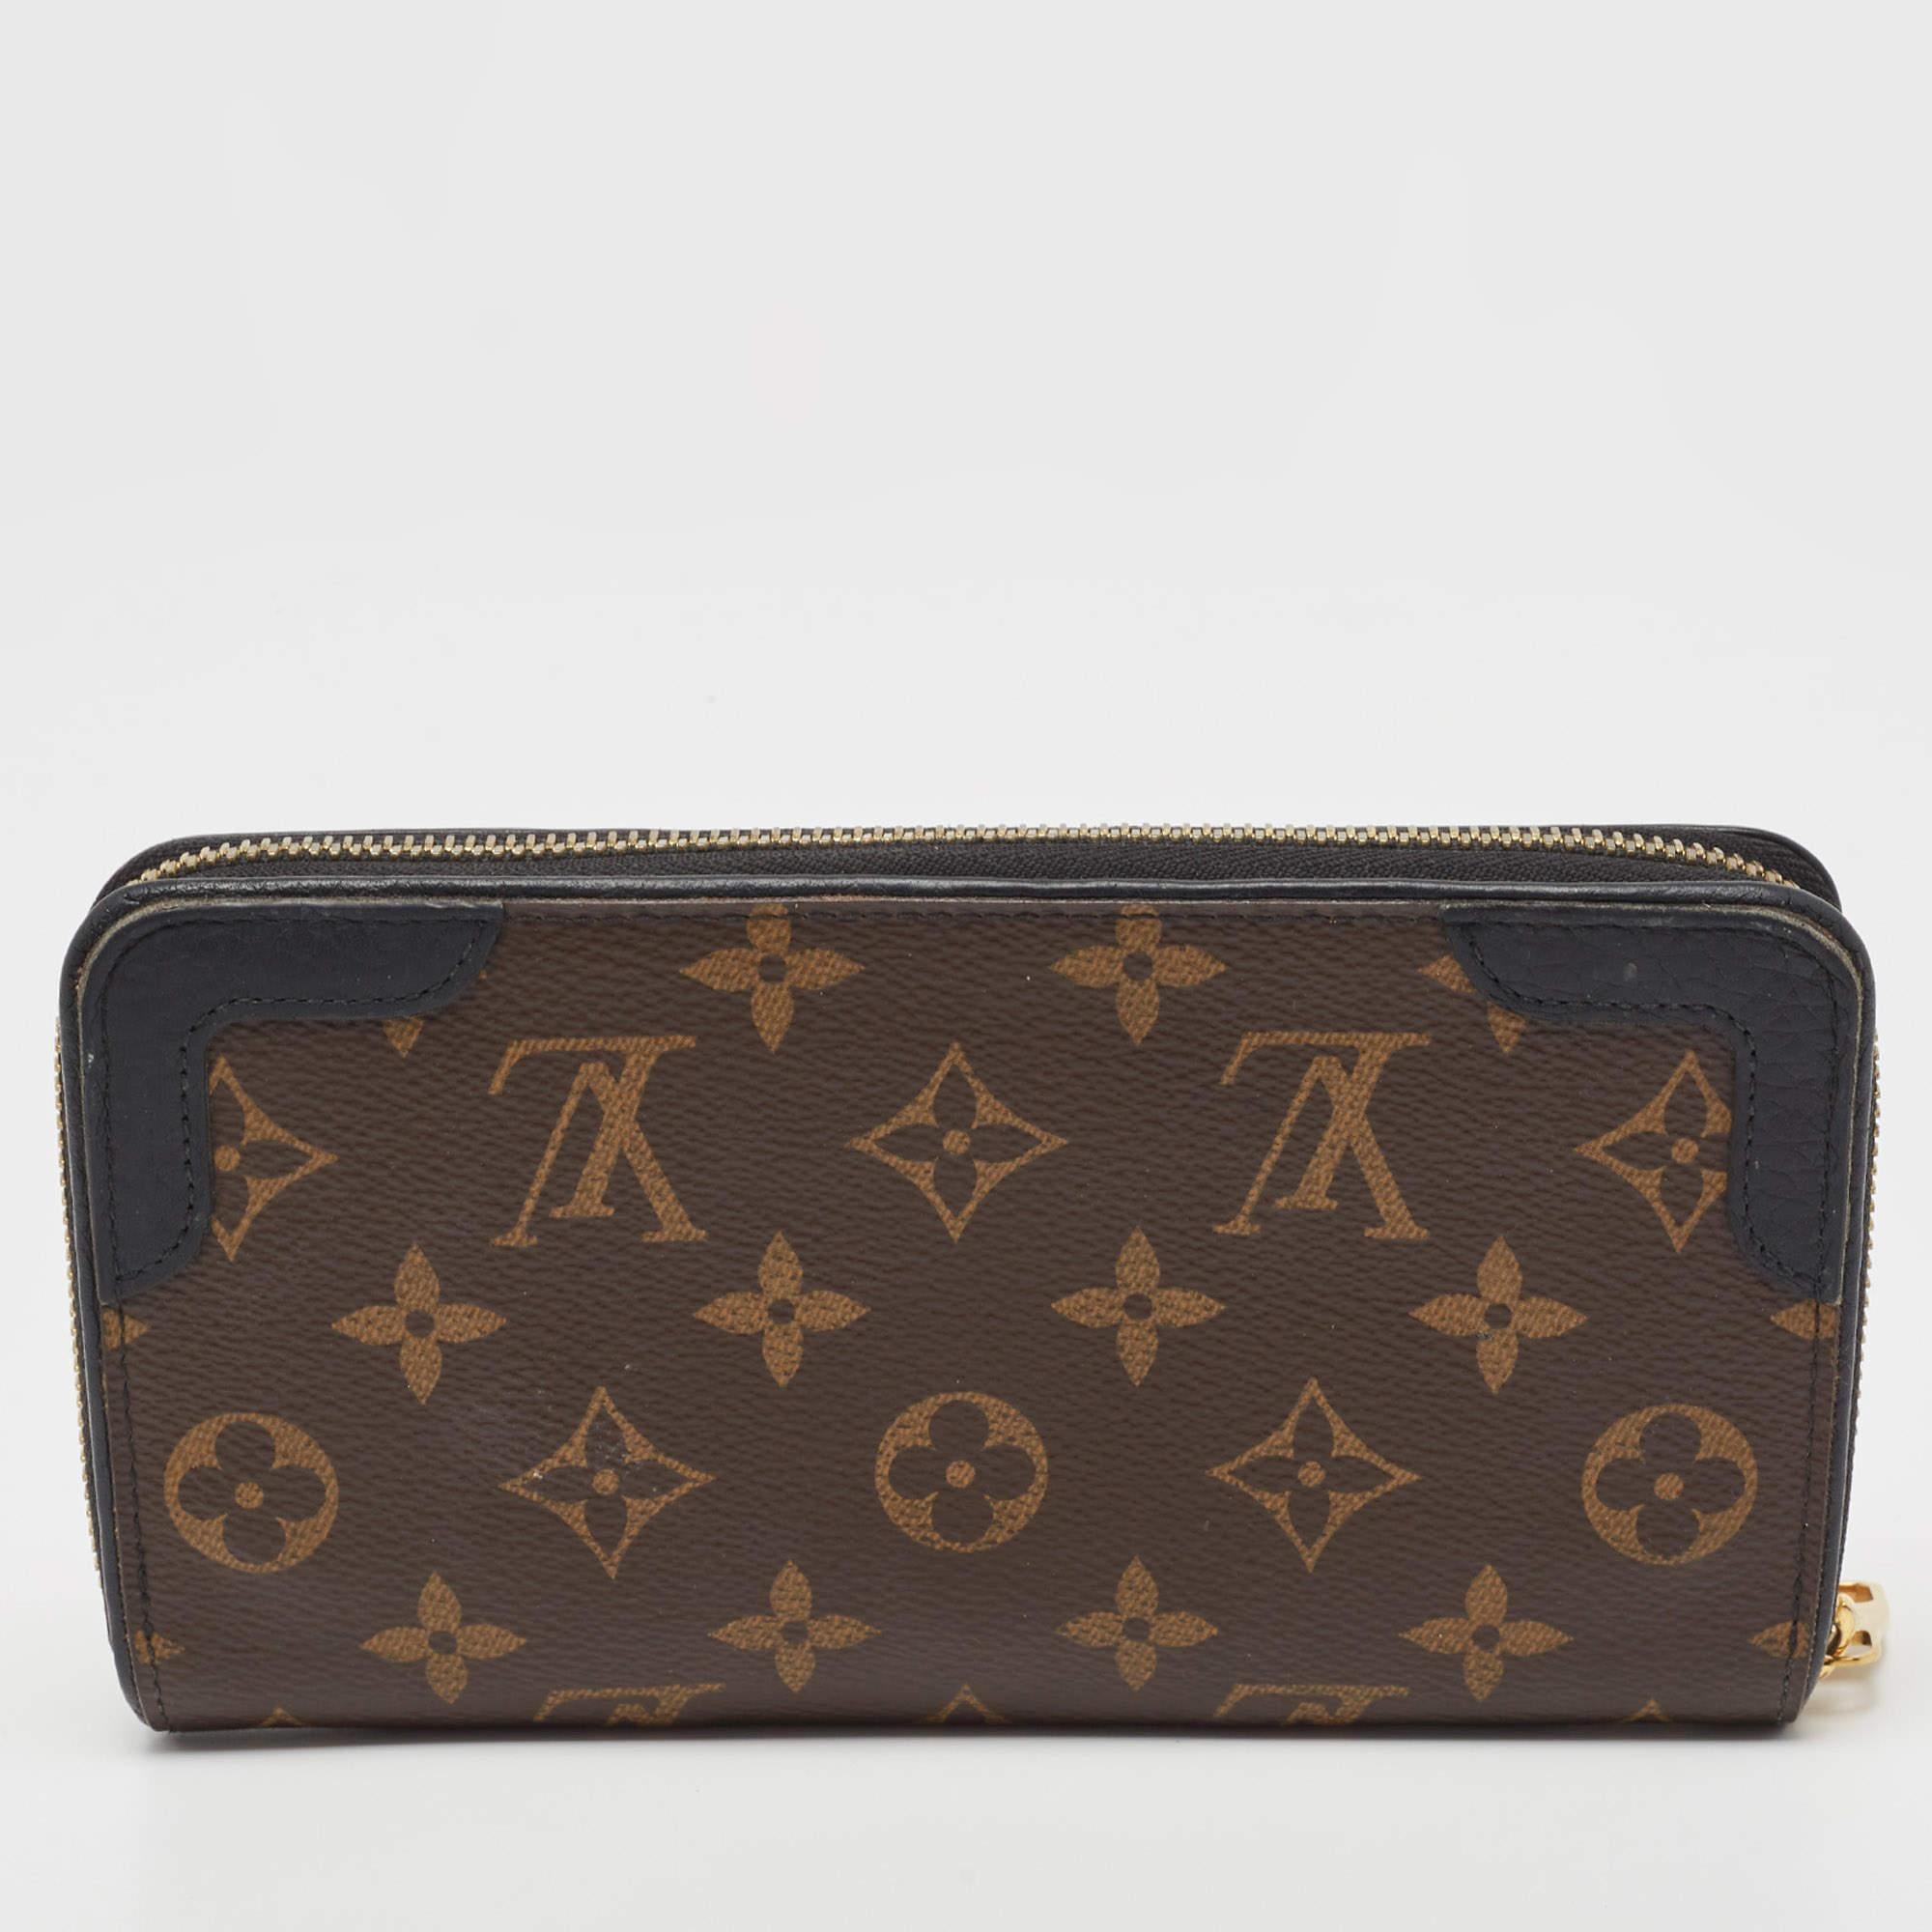 Ce portefeuille Louis Vuitton Zippy est conçu de manière pratique pour une utilisation quotidienne. Confectionné en toile et en cuir Monogram, ce portefeuille est doté d'une large fermeture zippée qui s'ouvre pour révéler de multiples fentes, des